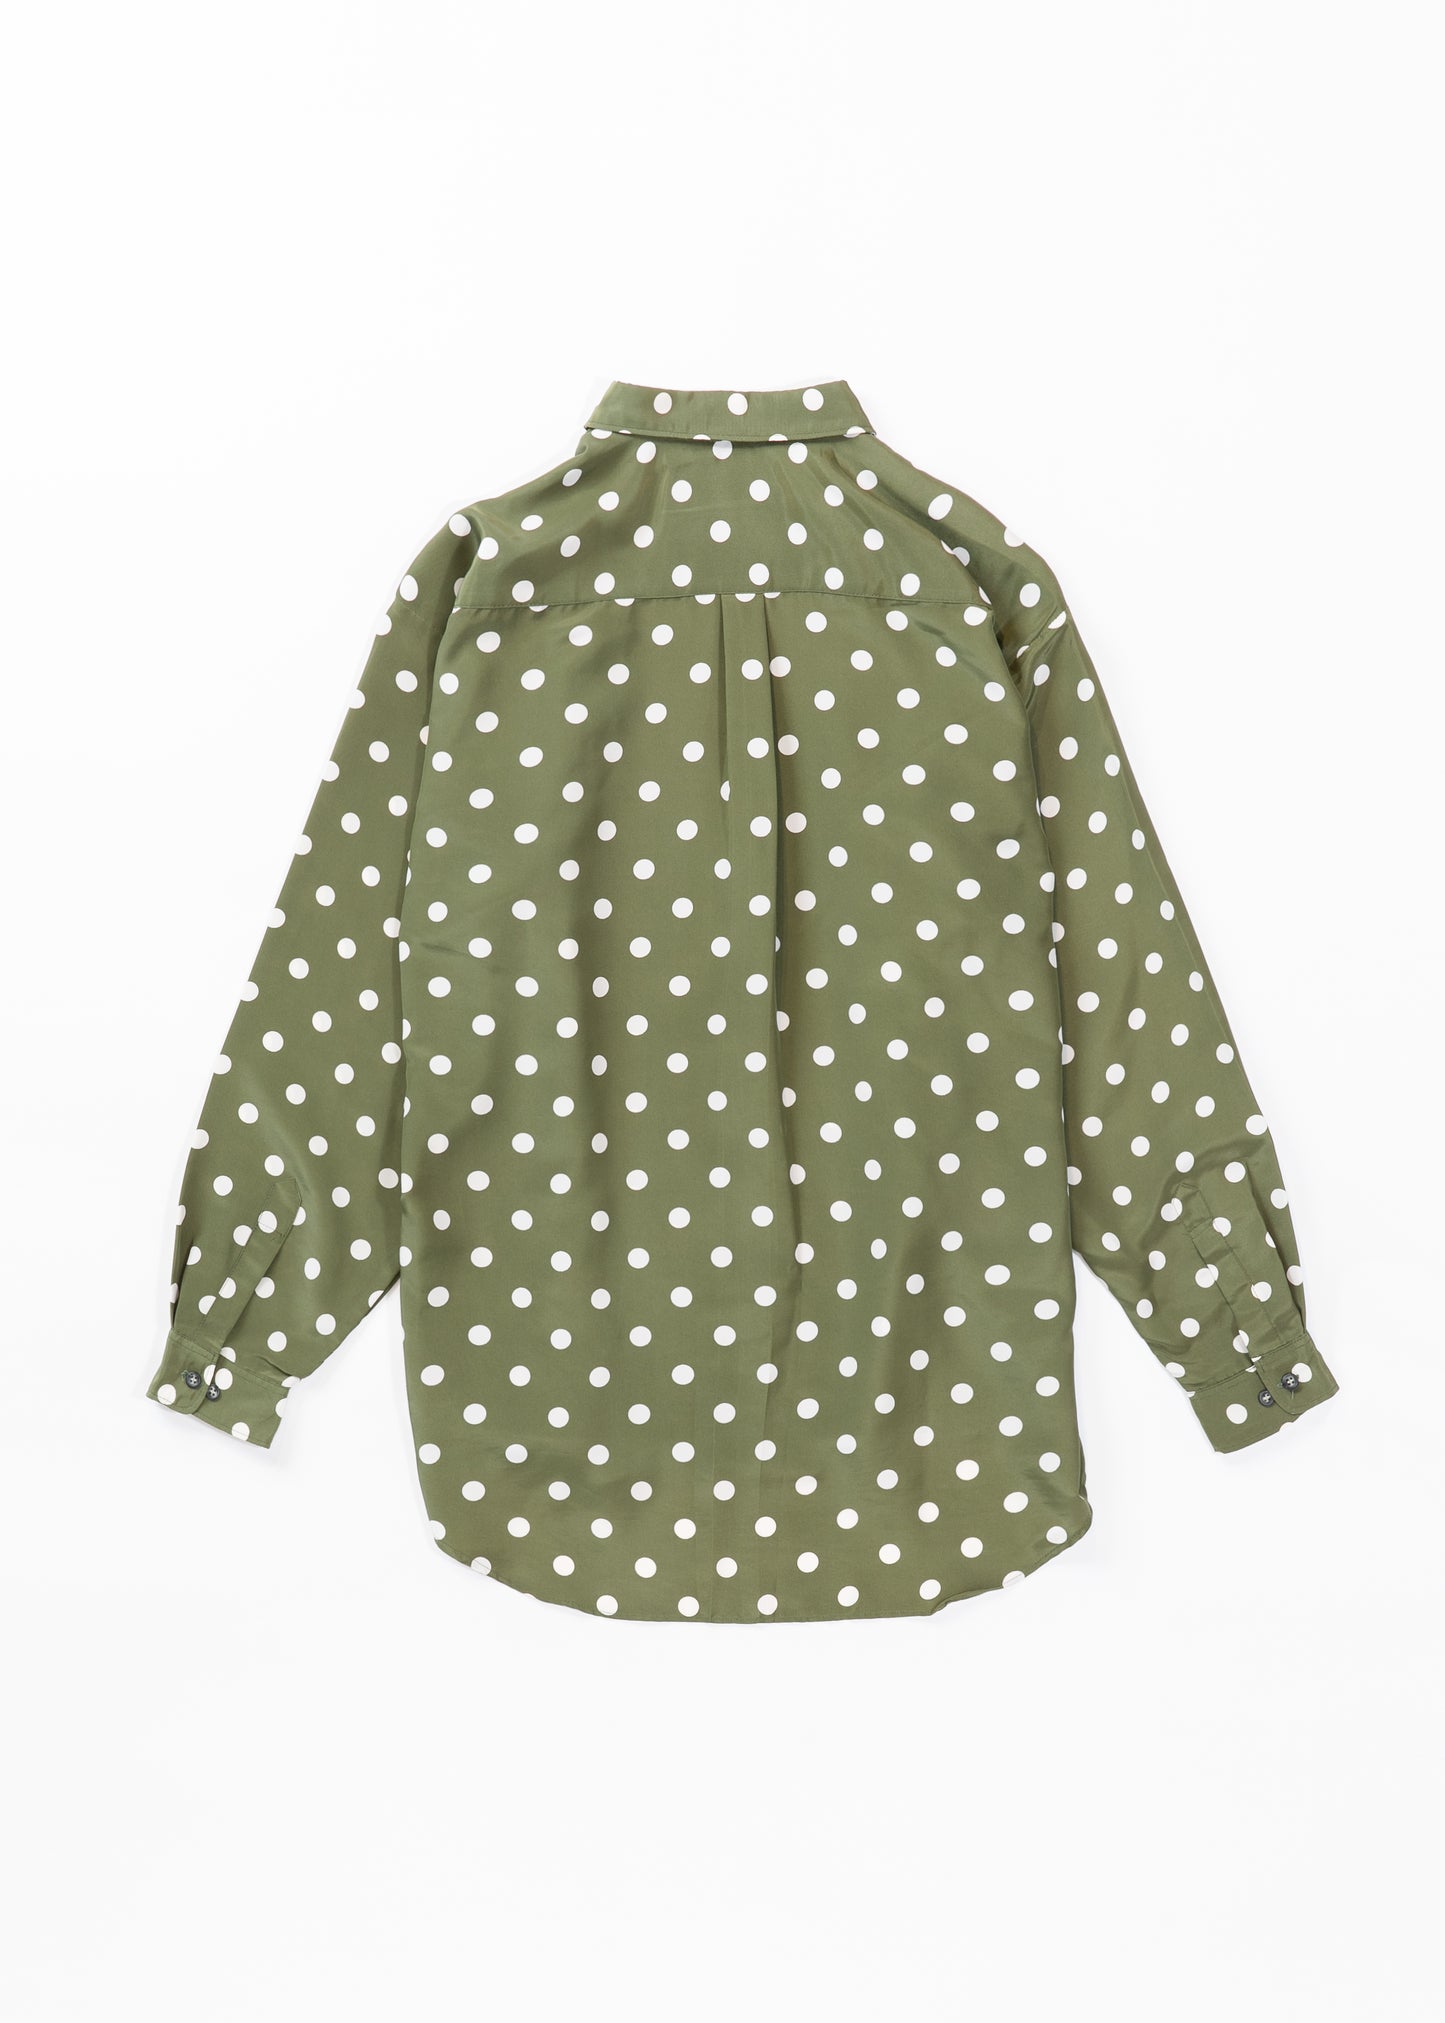 Polka dots printed shirt